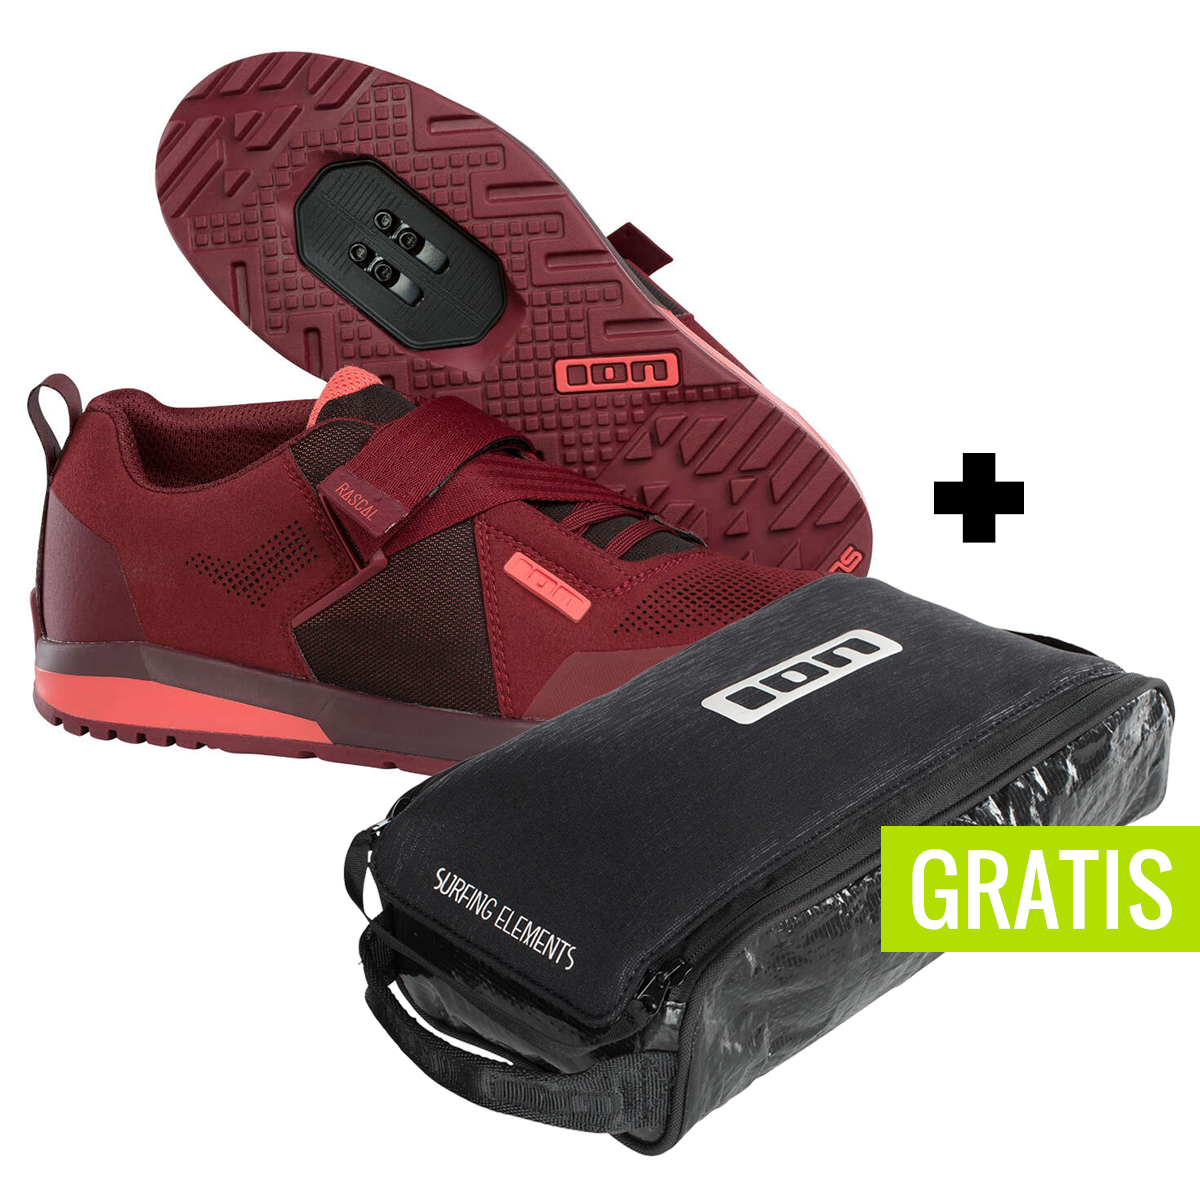 ION Chaussures VTT Rascal Ruby Rad + free shoe bag